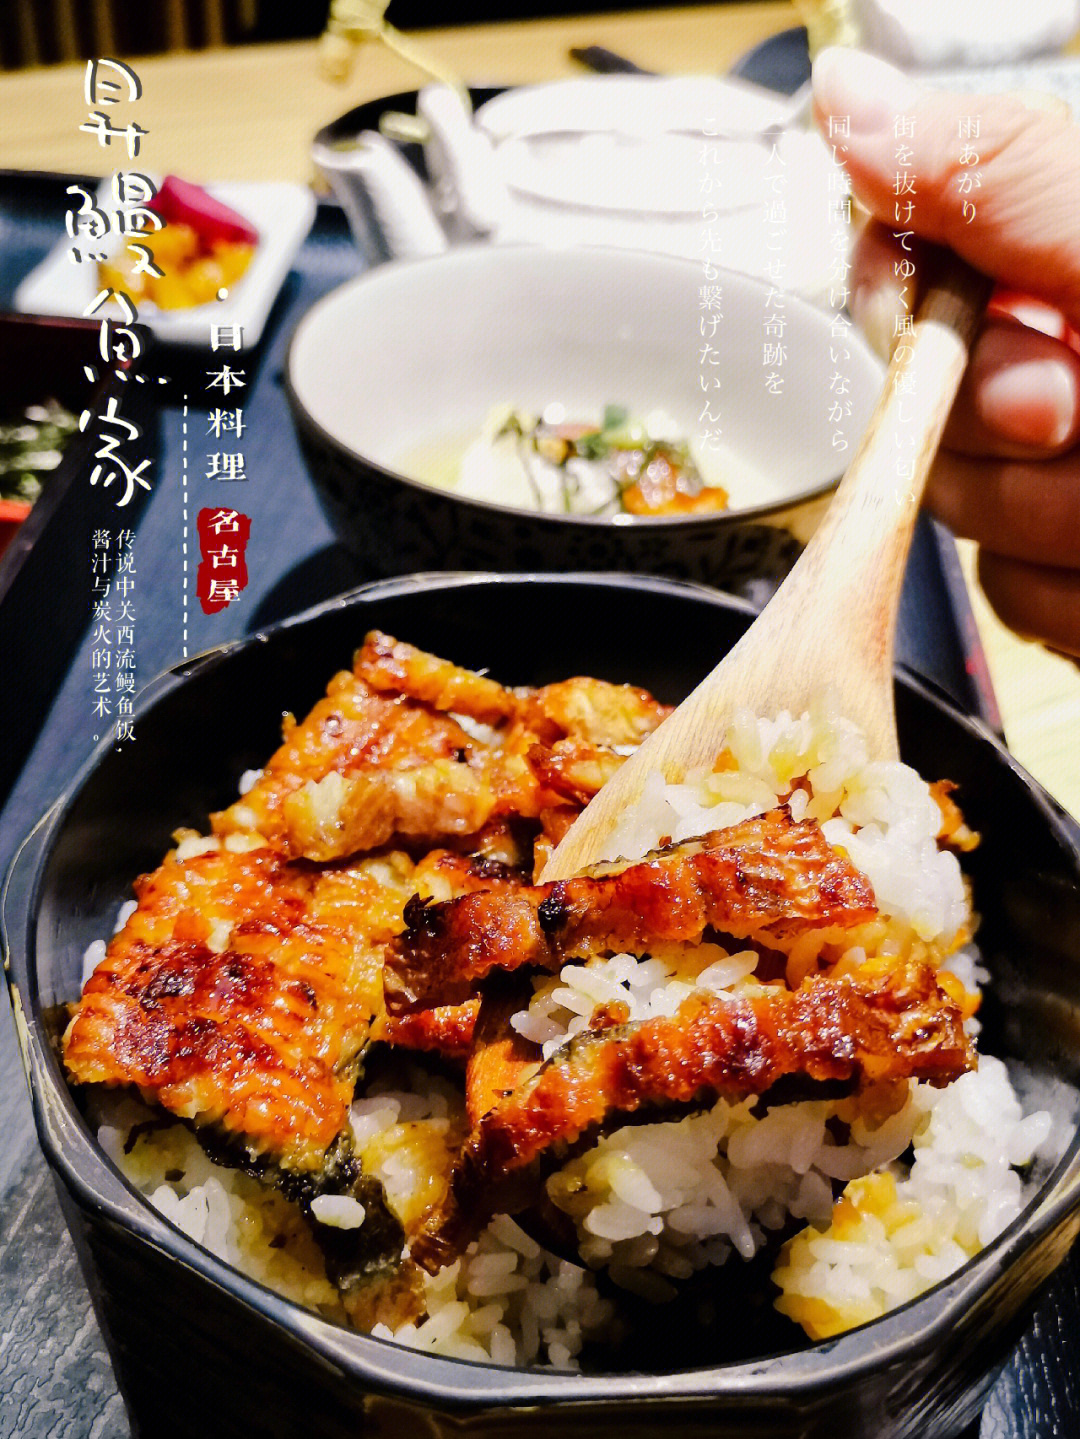 传说中日式关西鳗鱼饭炭火和酱汁的艺术